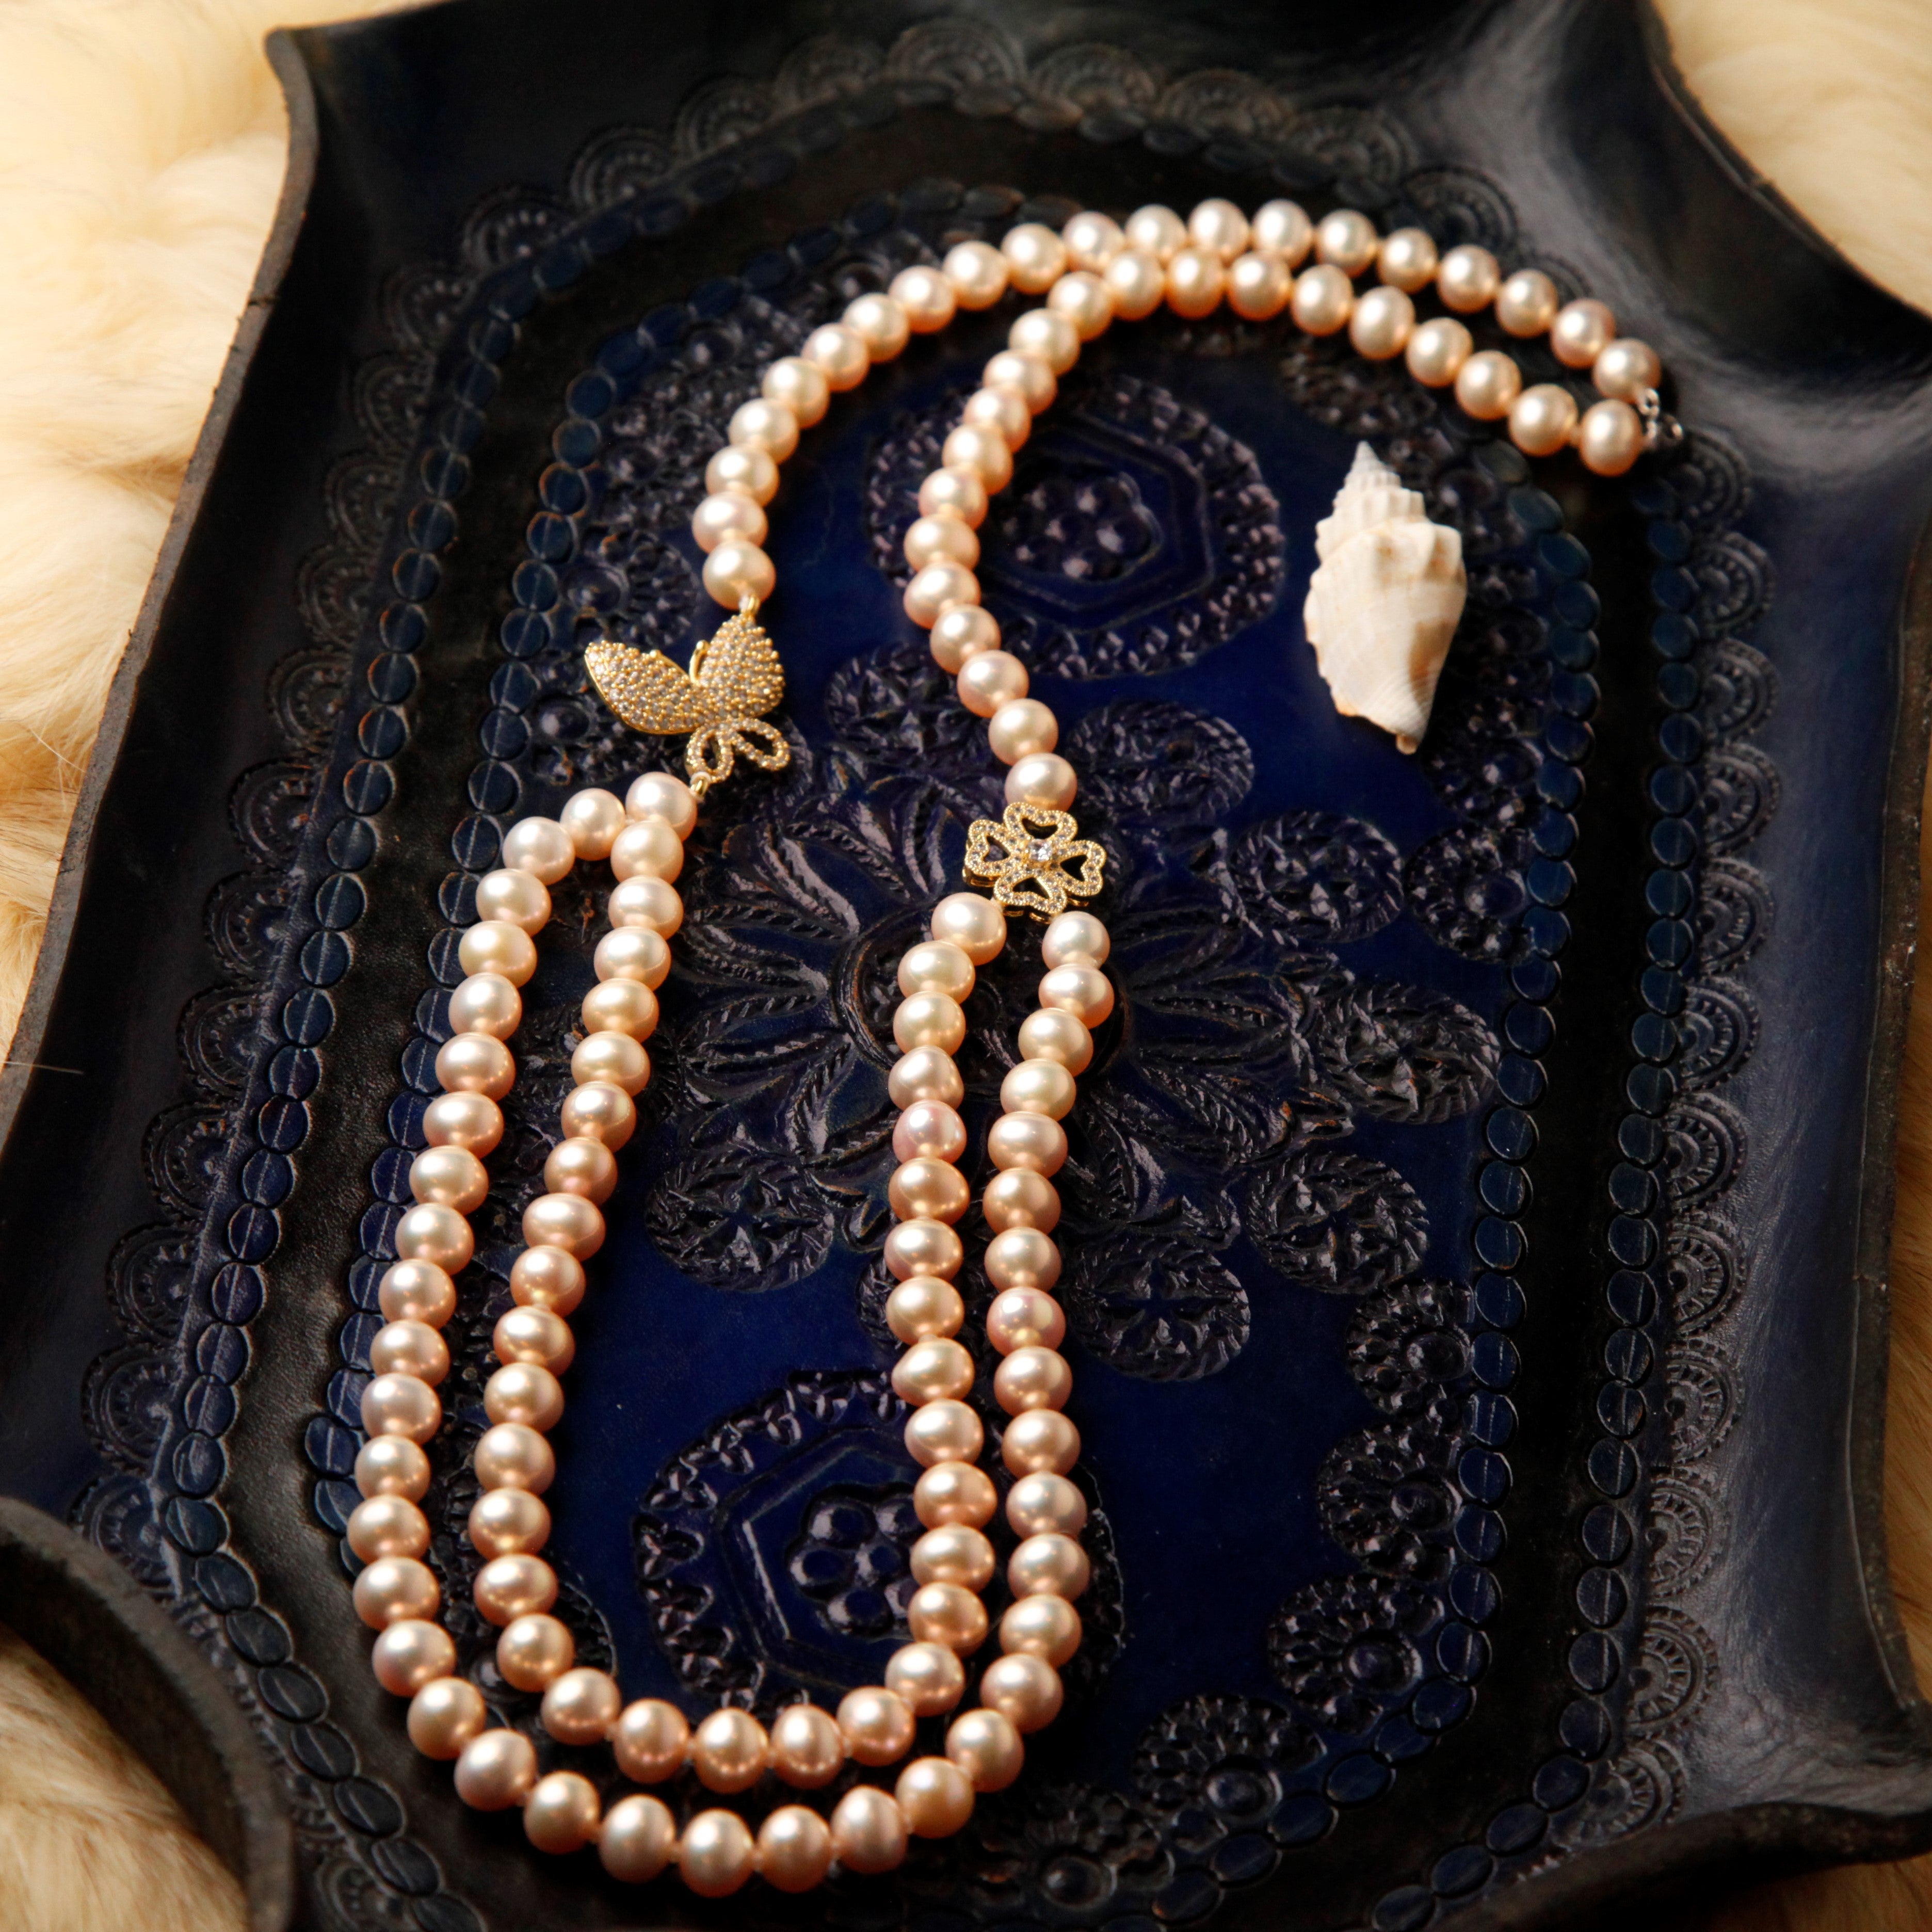 Collier de perles culture de papillon et de quatre feuilles de clou de girofle